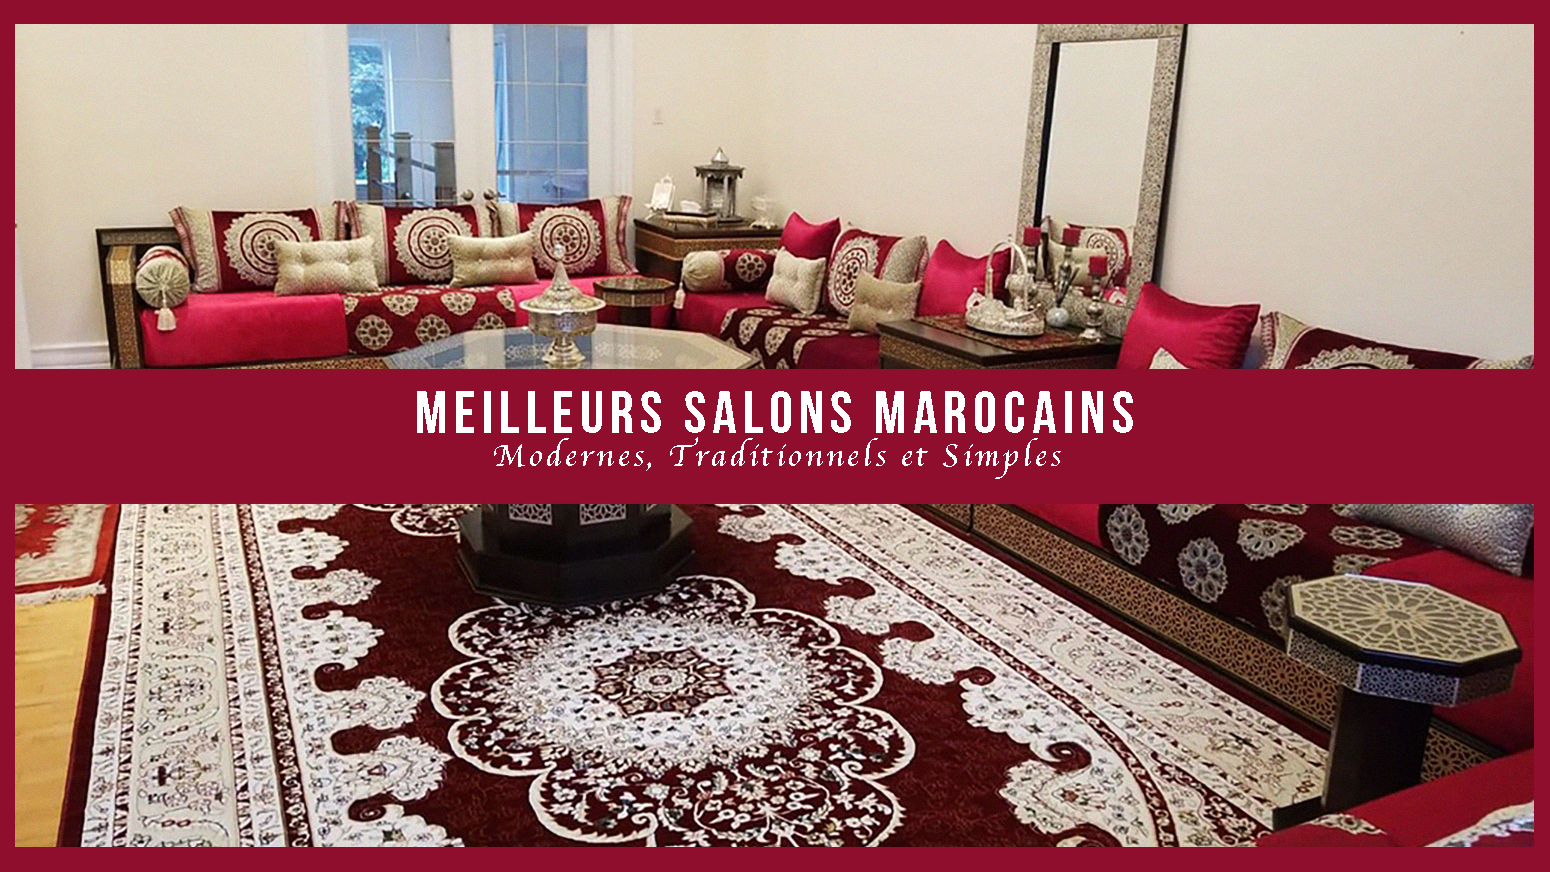 Meilleurs Salons Marocains Modernes, Traditionnels et Simples